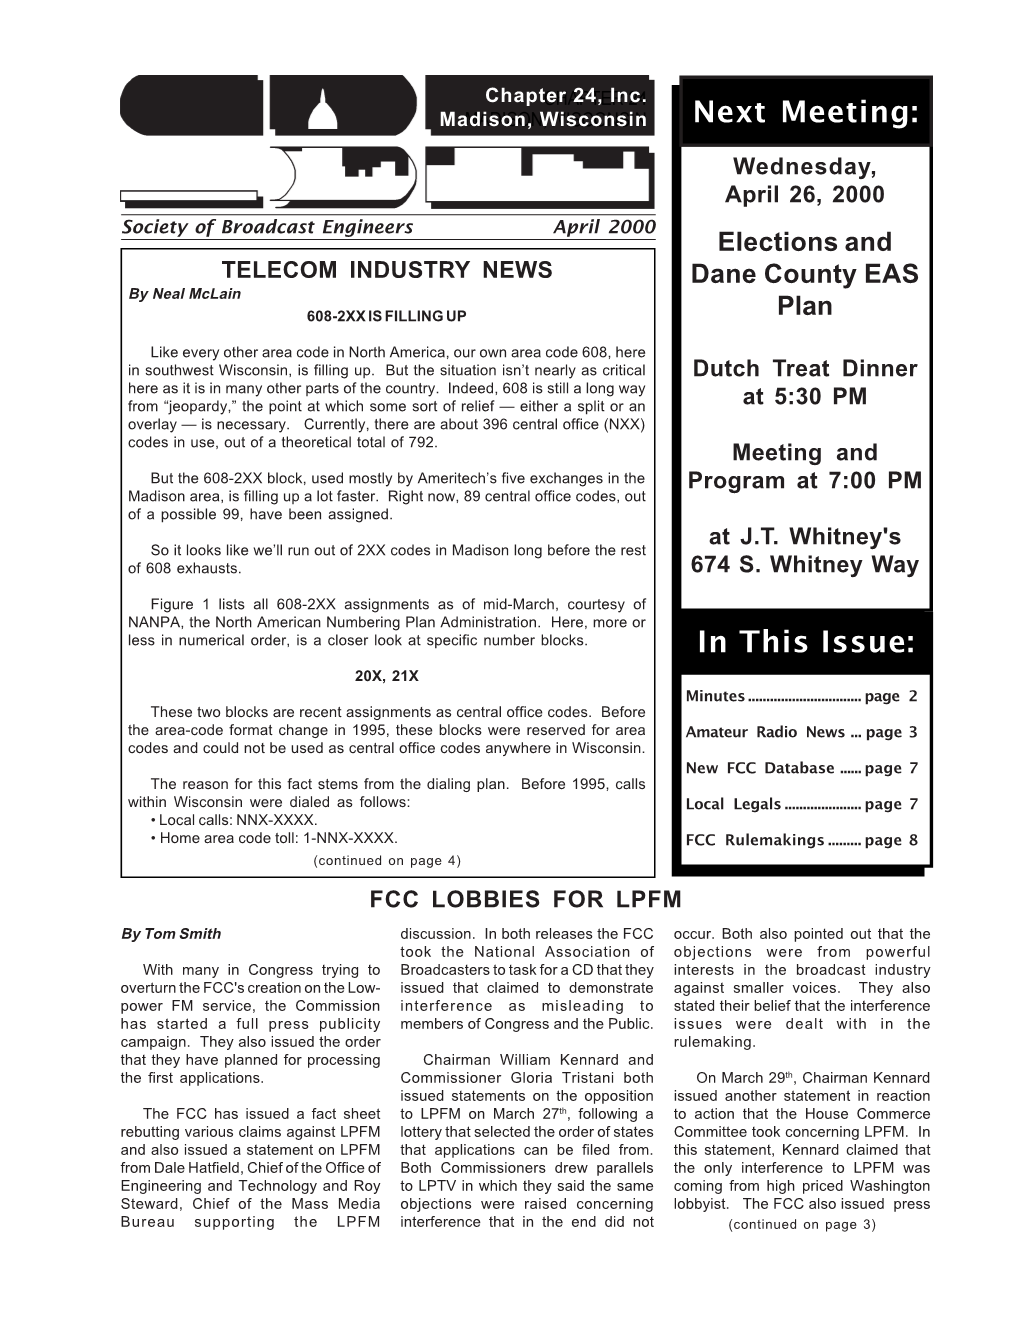 April 2000 Newsletter